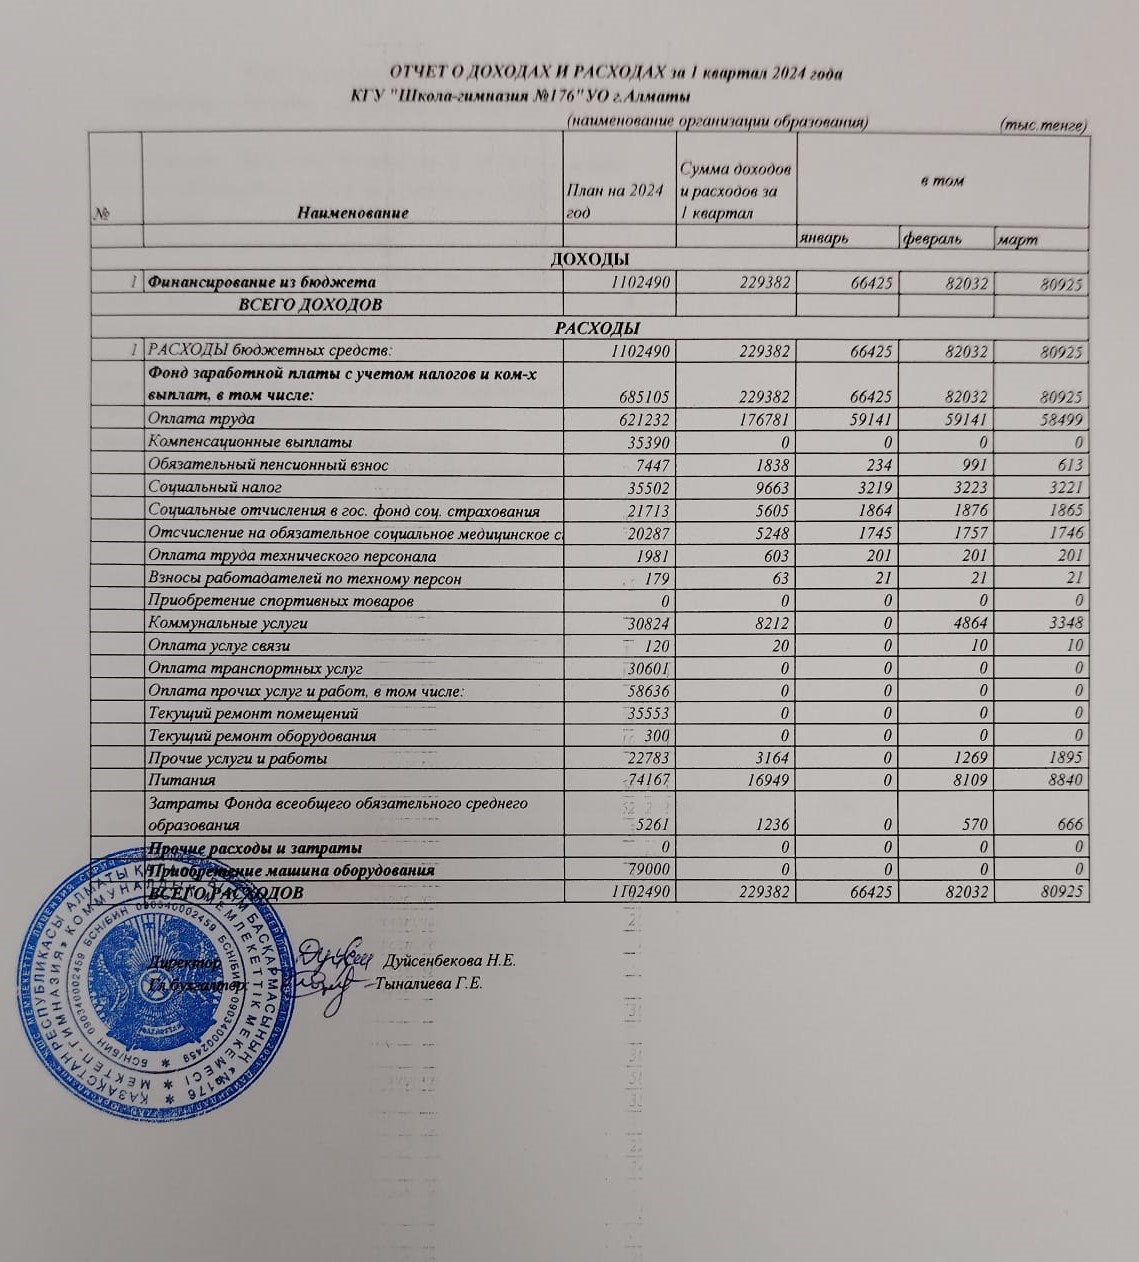 Отчет о доходах и расходах 1 кв. 2024 ж.